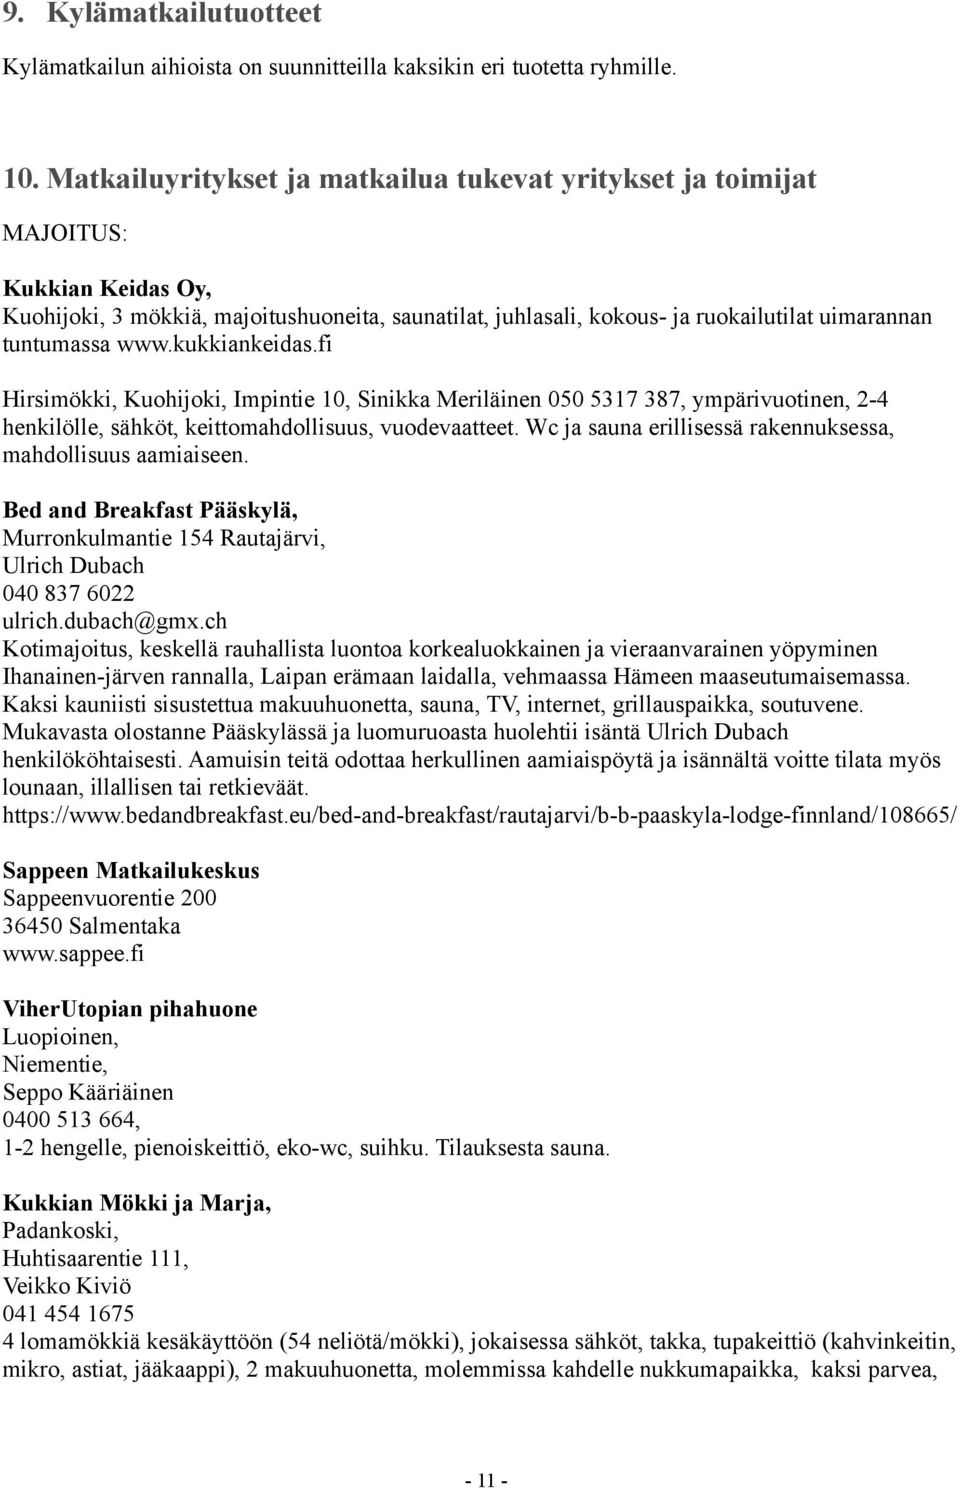 www.kukkiankeidas.fi Hirsimökki, Kuohijoki, Impintie 10, Sinikka Meriläinen 050 5317 387, ympärivuotinen, 2-4 henkilölle, sähköt, keittomahdollisuus, vuodevaatteet.